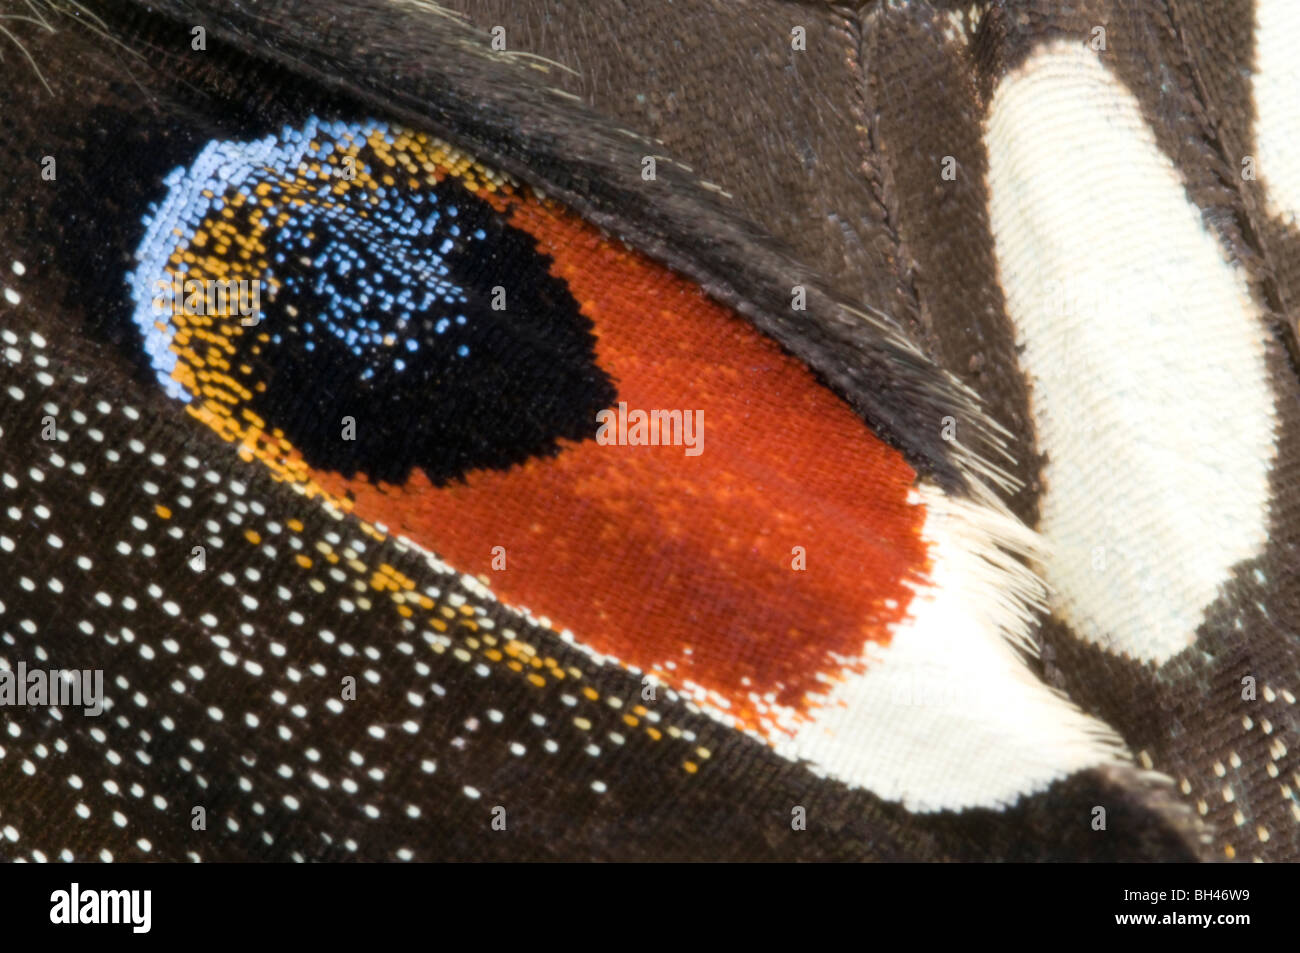 Kalk-Schwalbenschwanz-Schmetterling (Papilio Demoleus). Makro abstraktes Bild von Auge-Ort Markierungen. Stockfoto